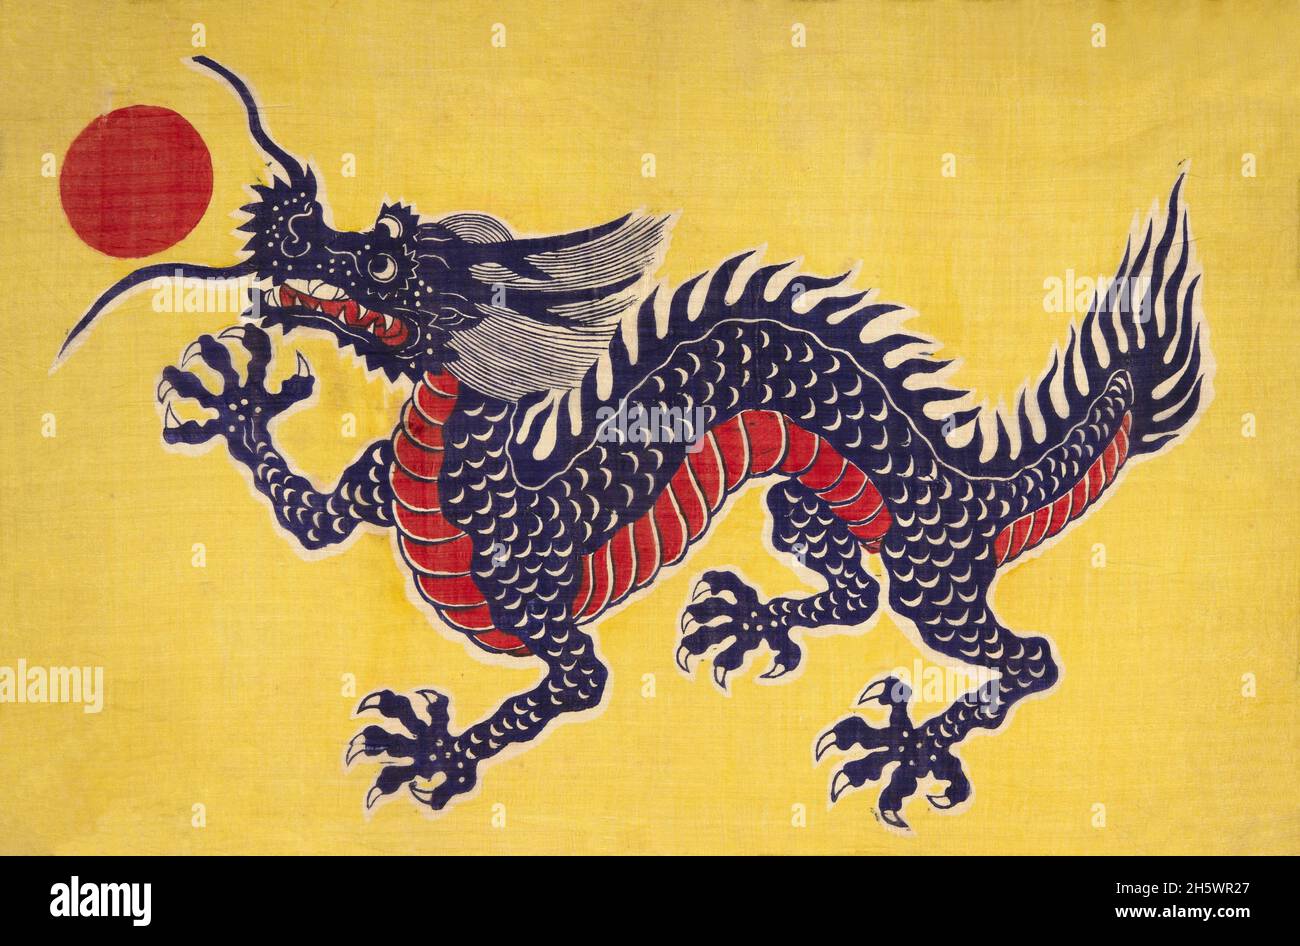 Drapeau de soie représentant un dragon .Emblème de l'Empire chinois pendant la dynastie CH'ing.Soie à imprimé jaune avec dragon impérial à cinq griffes représenté en bleu violacé.Les écailles du ventre sont rouges.Ce type de drapeau a été utilisé de 1889 à 1911.Avant cela, les drapeaux étaient généralement rectangulaires-triangulaires. Banque D'Images